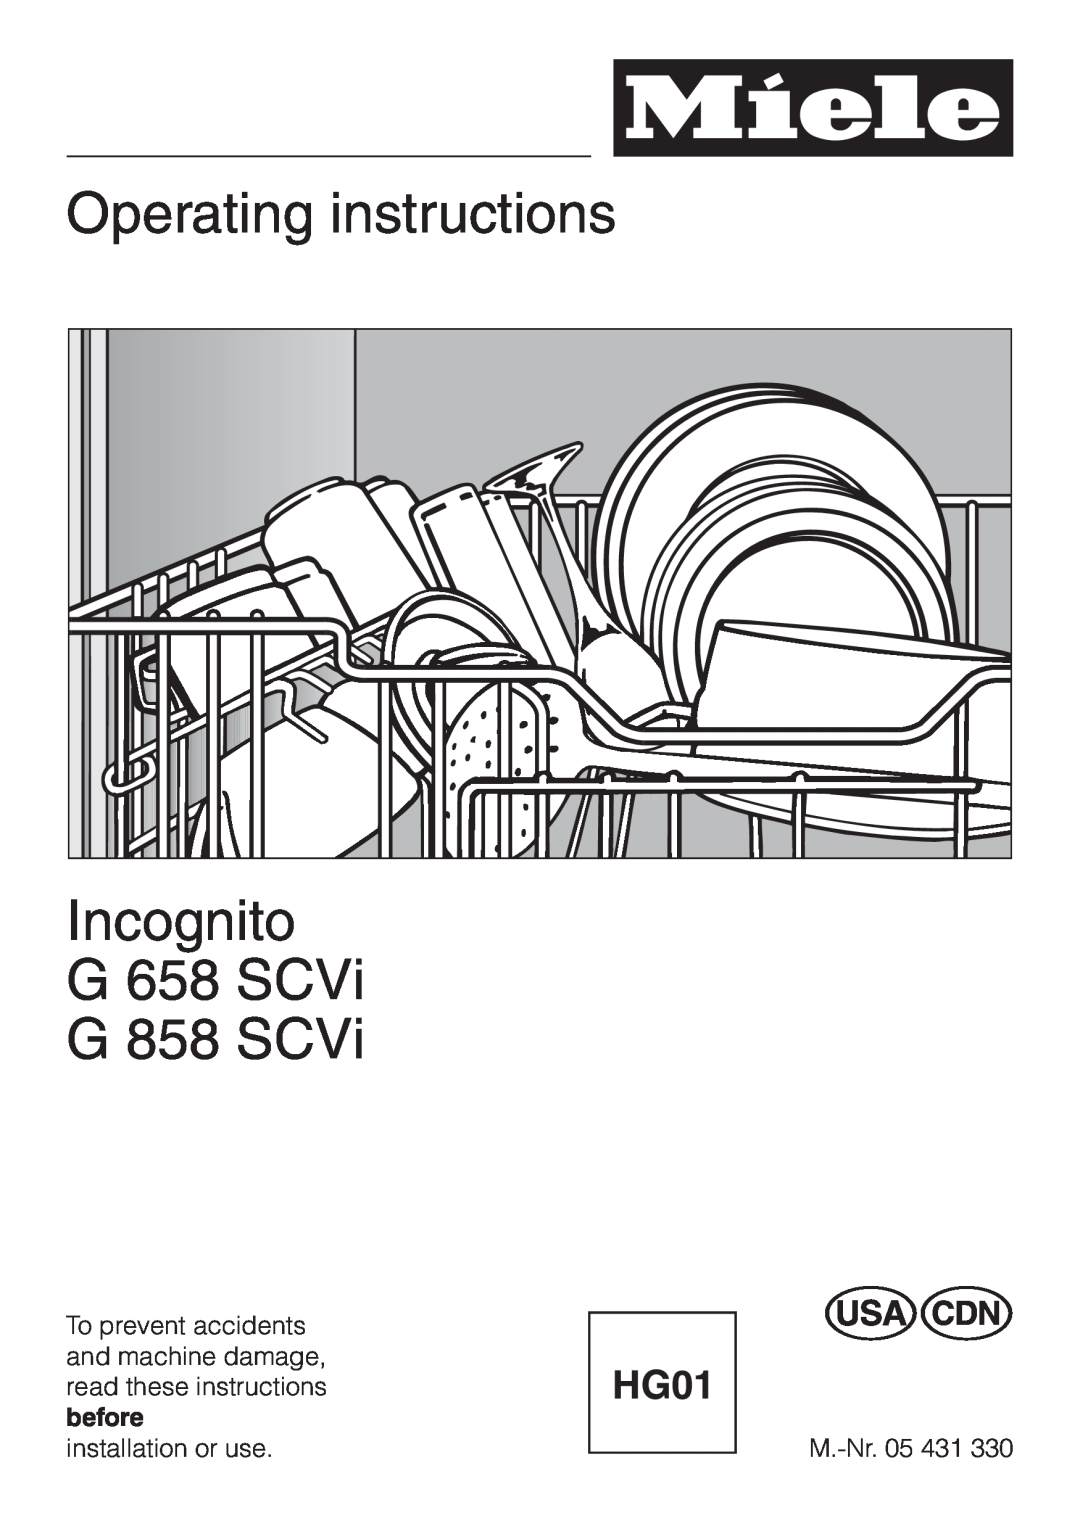 Miele G658SCVI, G858SCVI manual Operating instructions, Incognito, G 658 SCVi, G 858 SCVi 